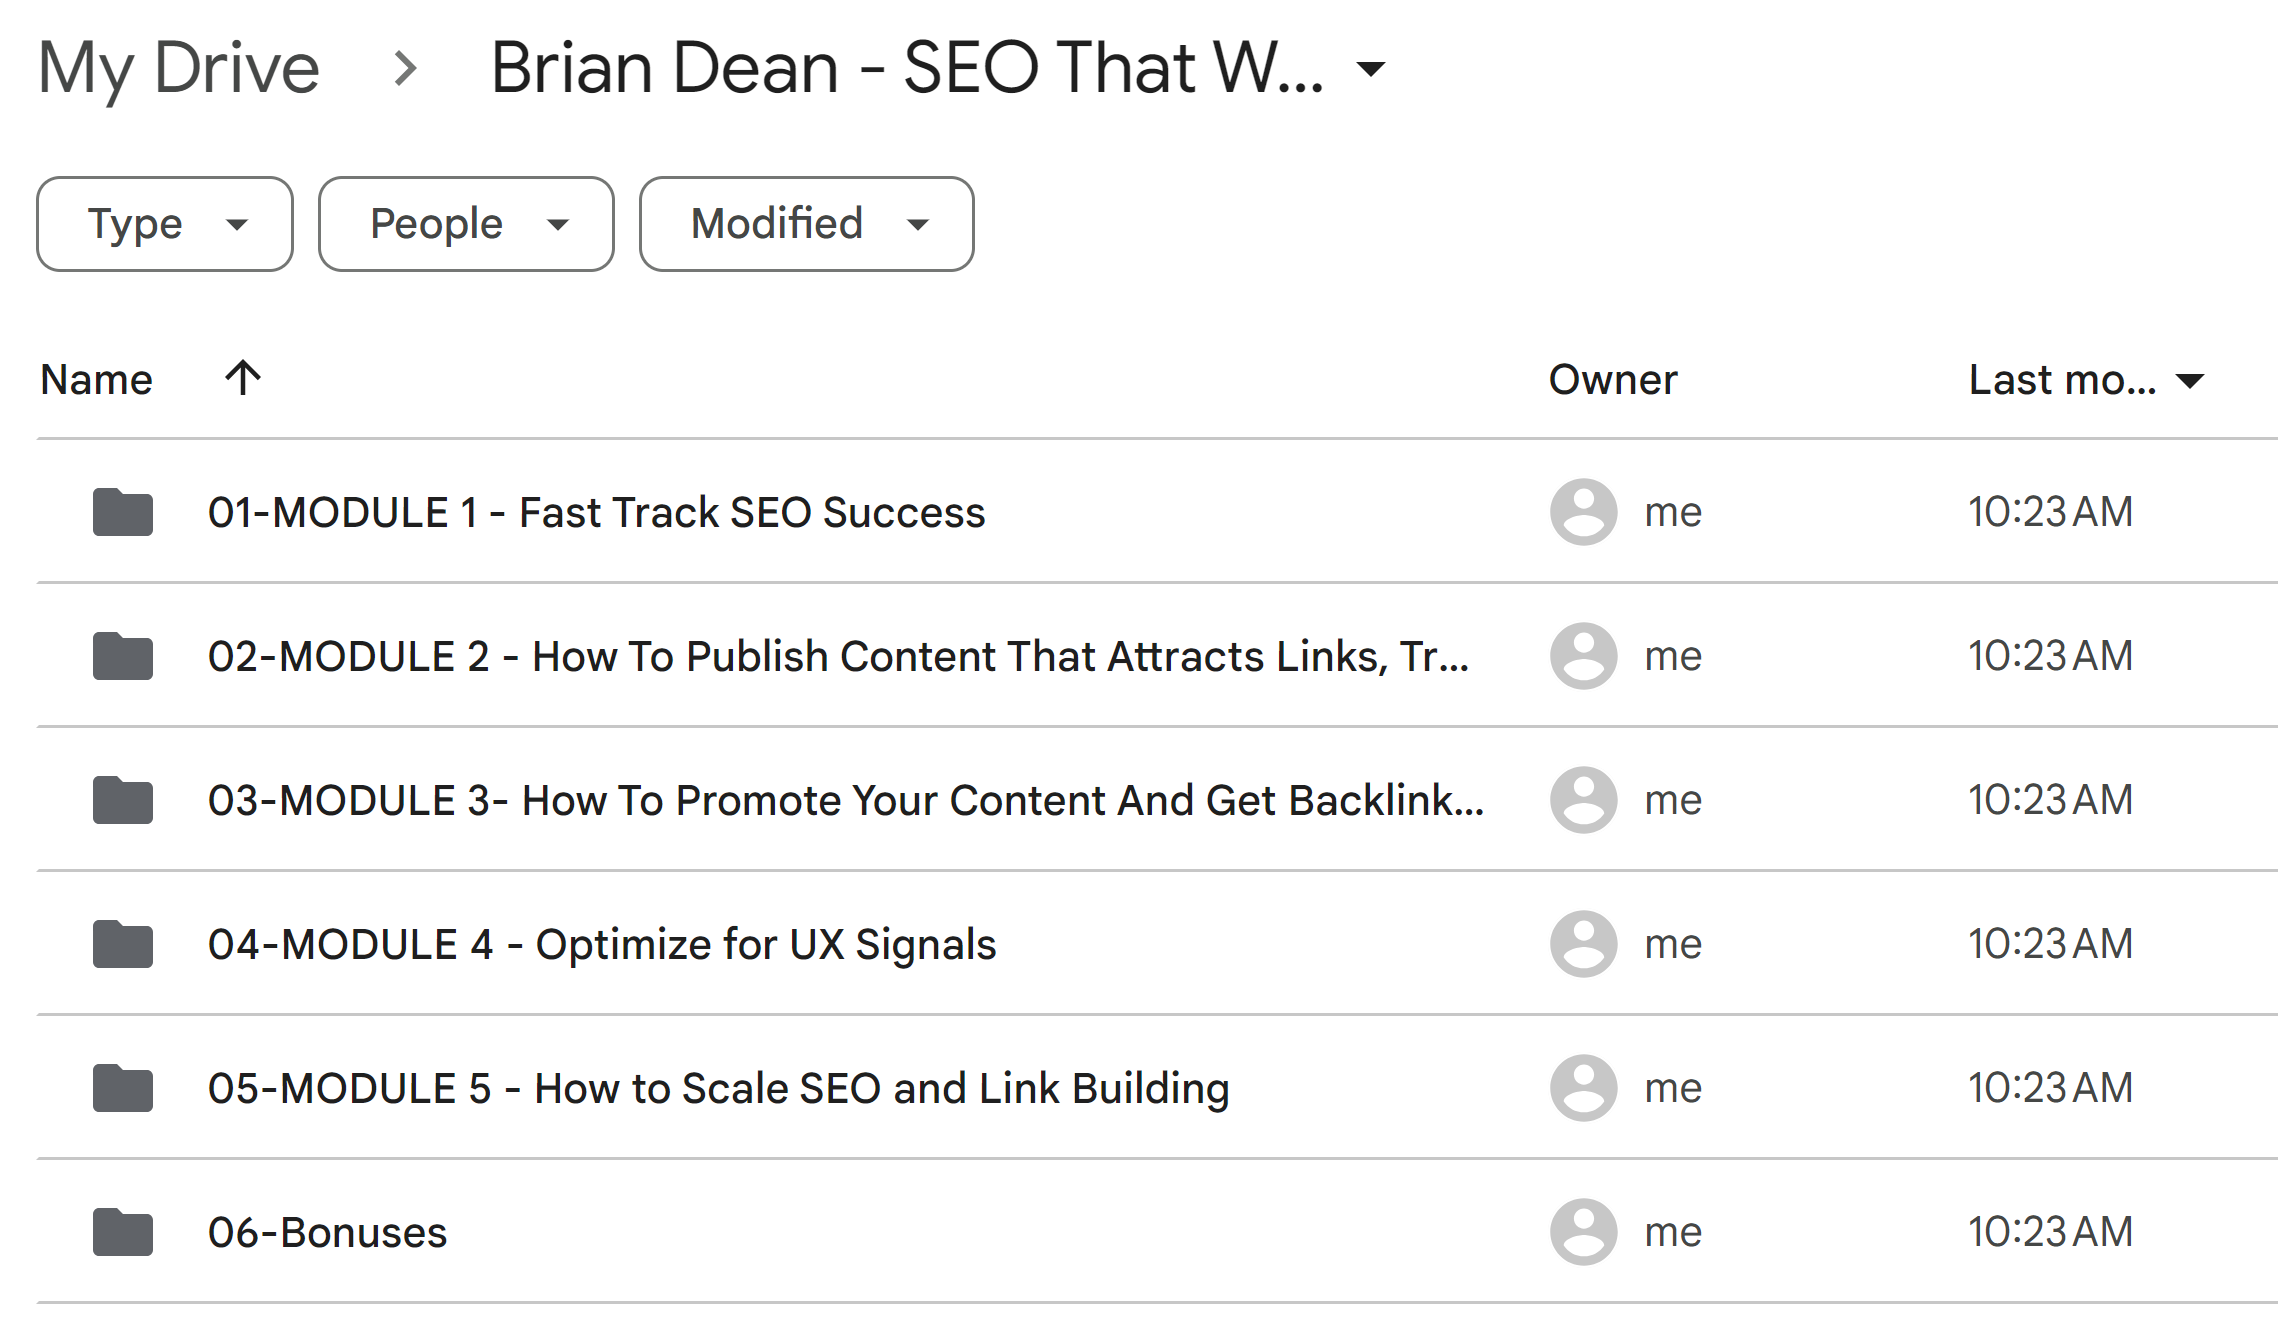 Brian Dean Seo That Works 4.0